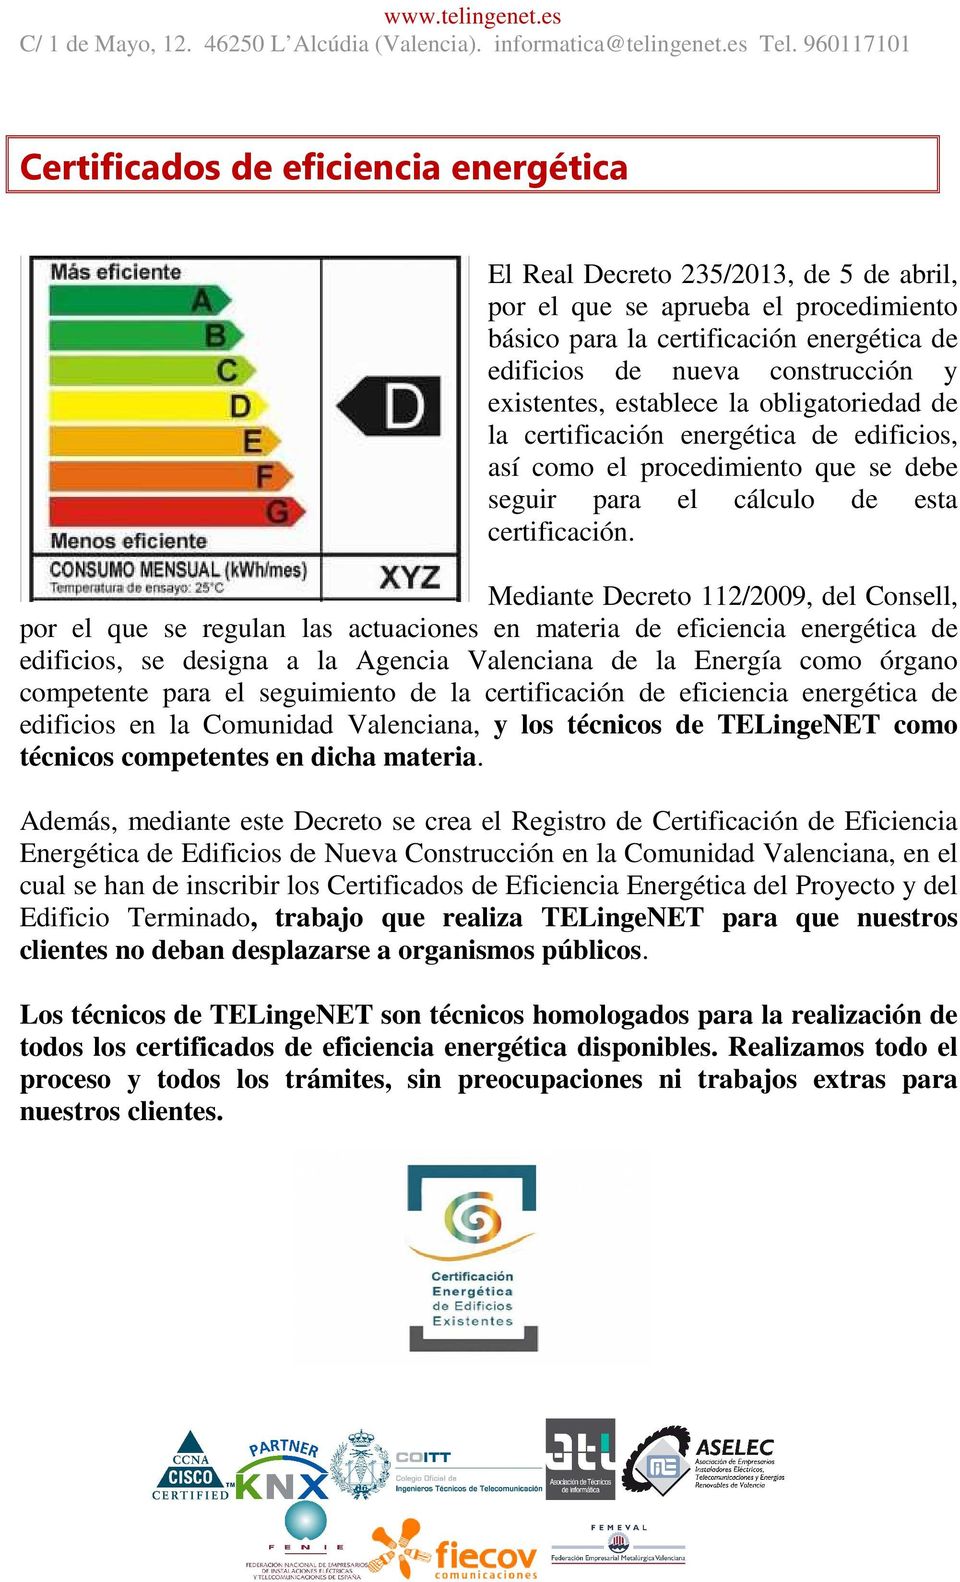 Mediante Decreto 112/2009, del Consell, por el que se regulan las actuaciones en materia de eficiencia energética de edificios, se designa a la Agencia Valenciana de la Energía como órgano competente